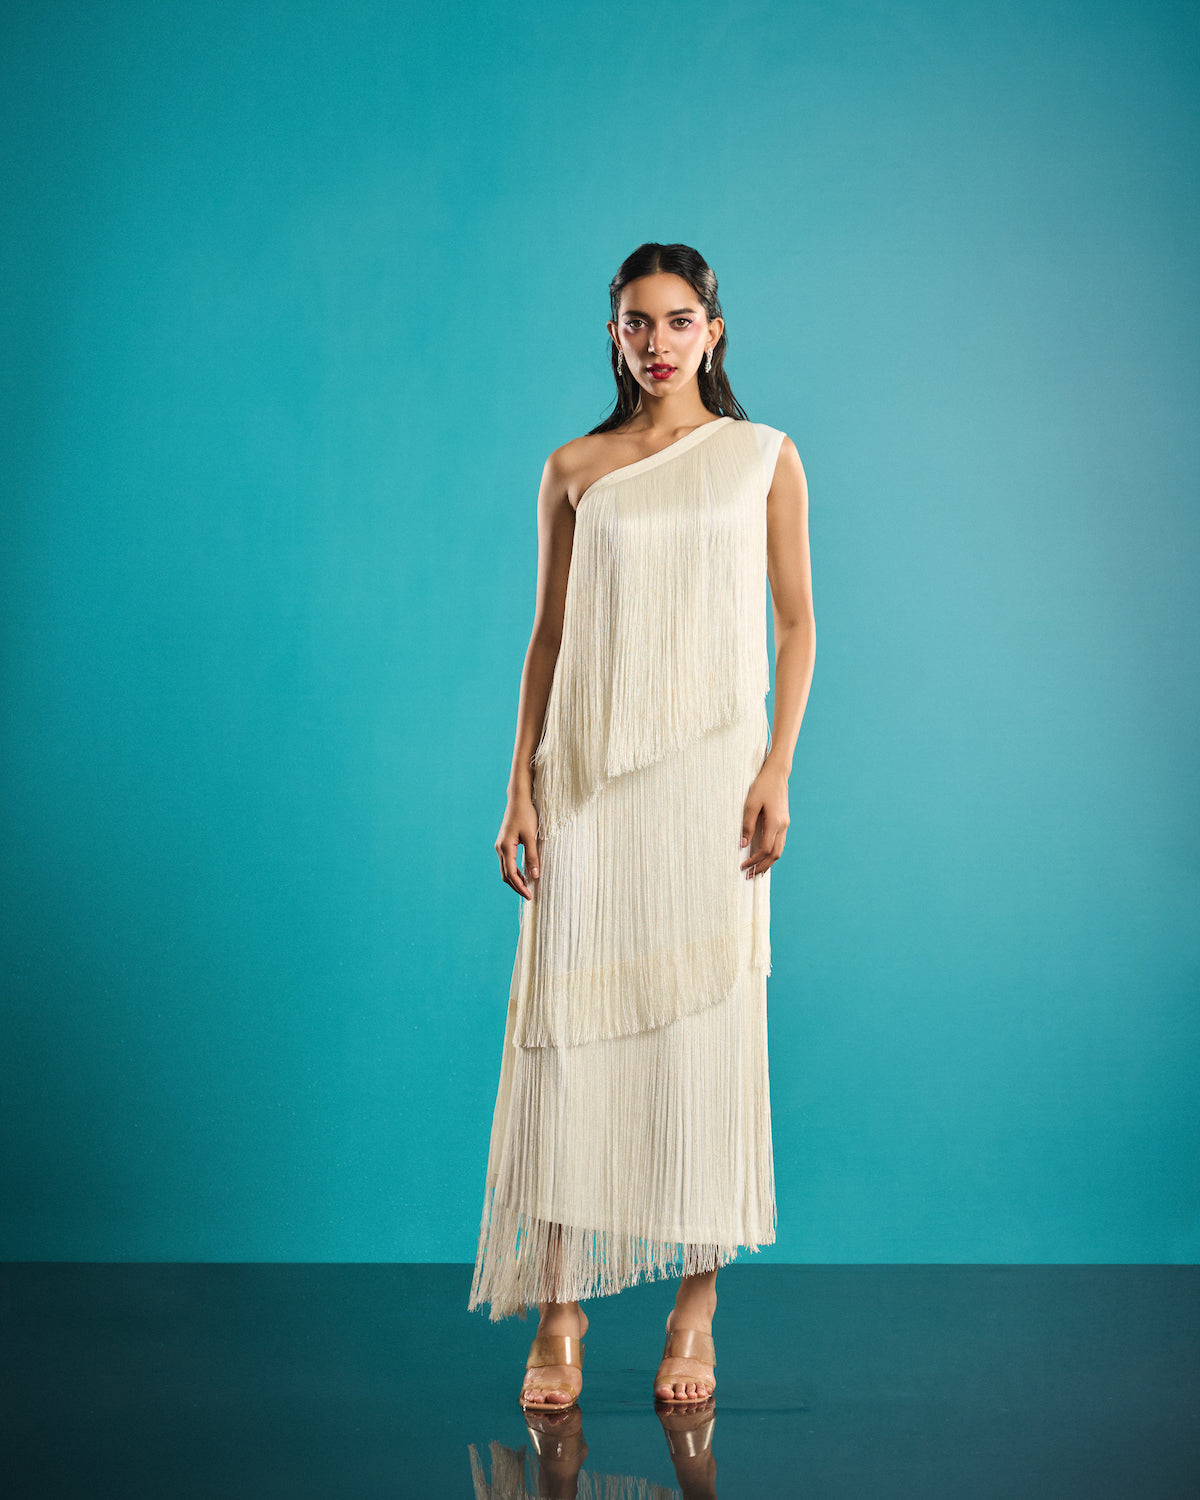 Serene white fringe dress